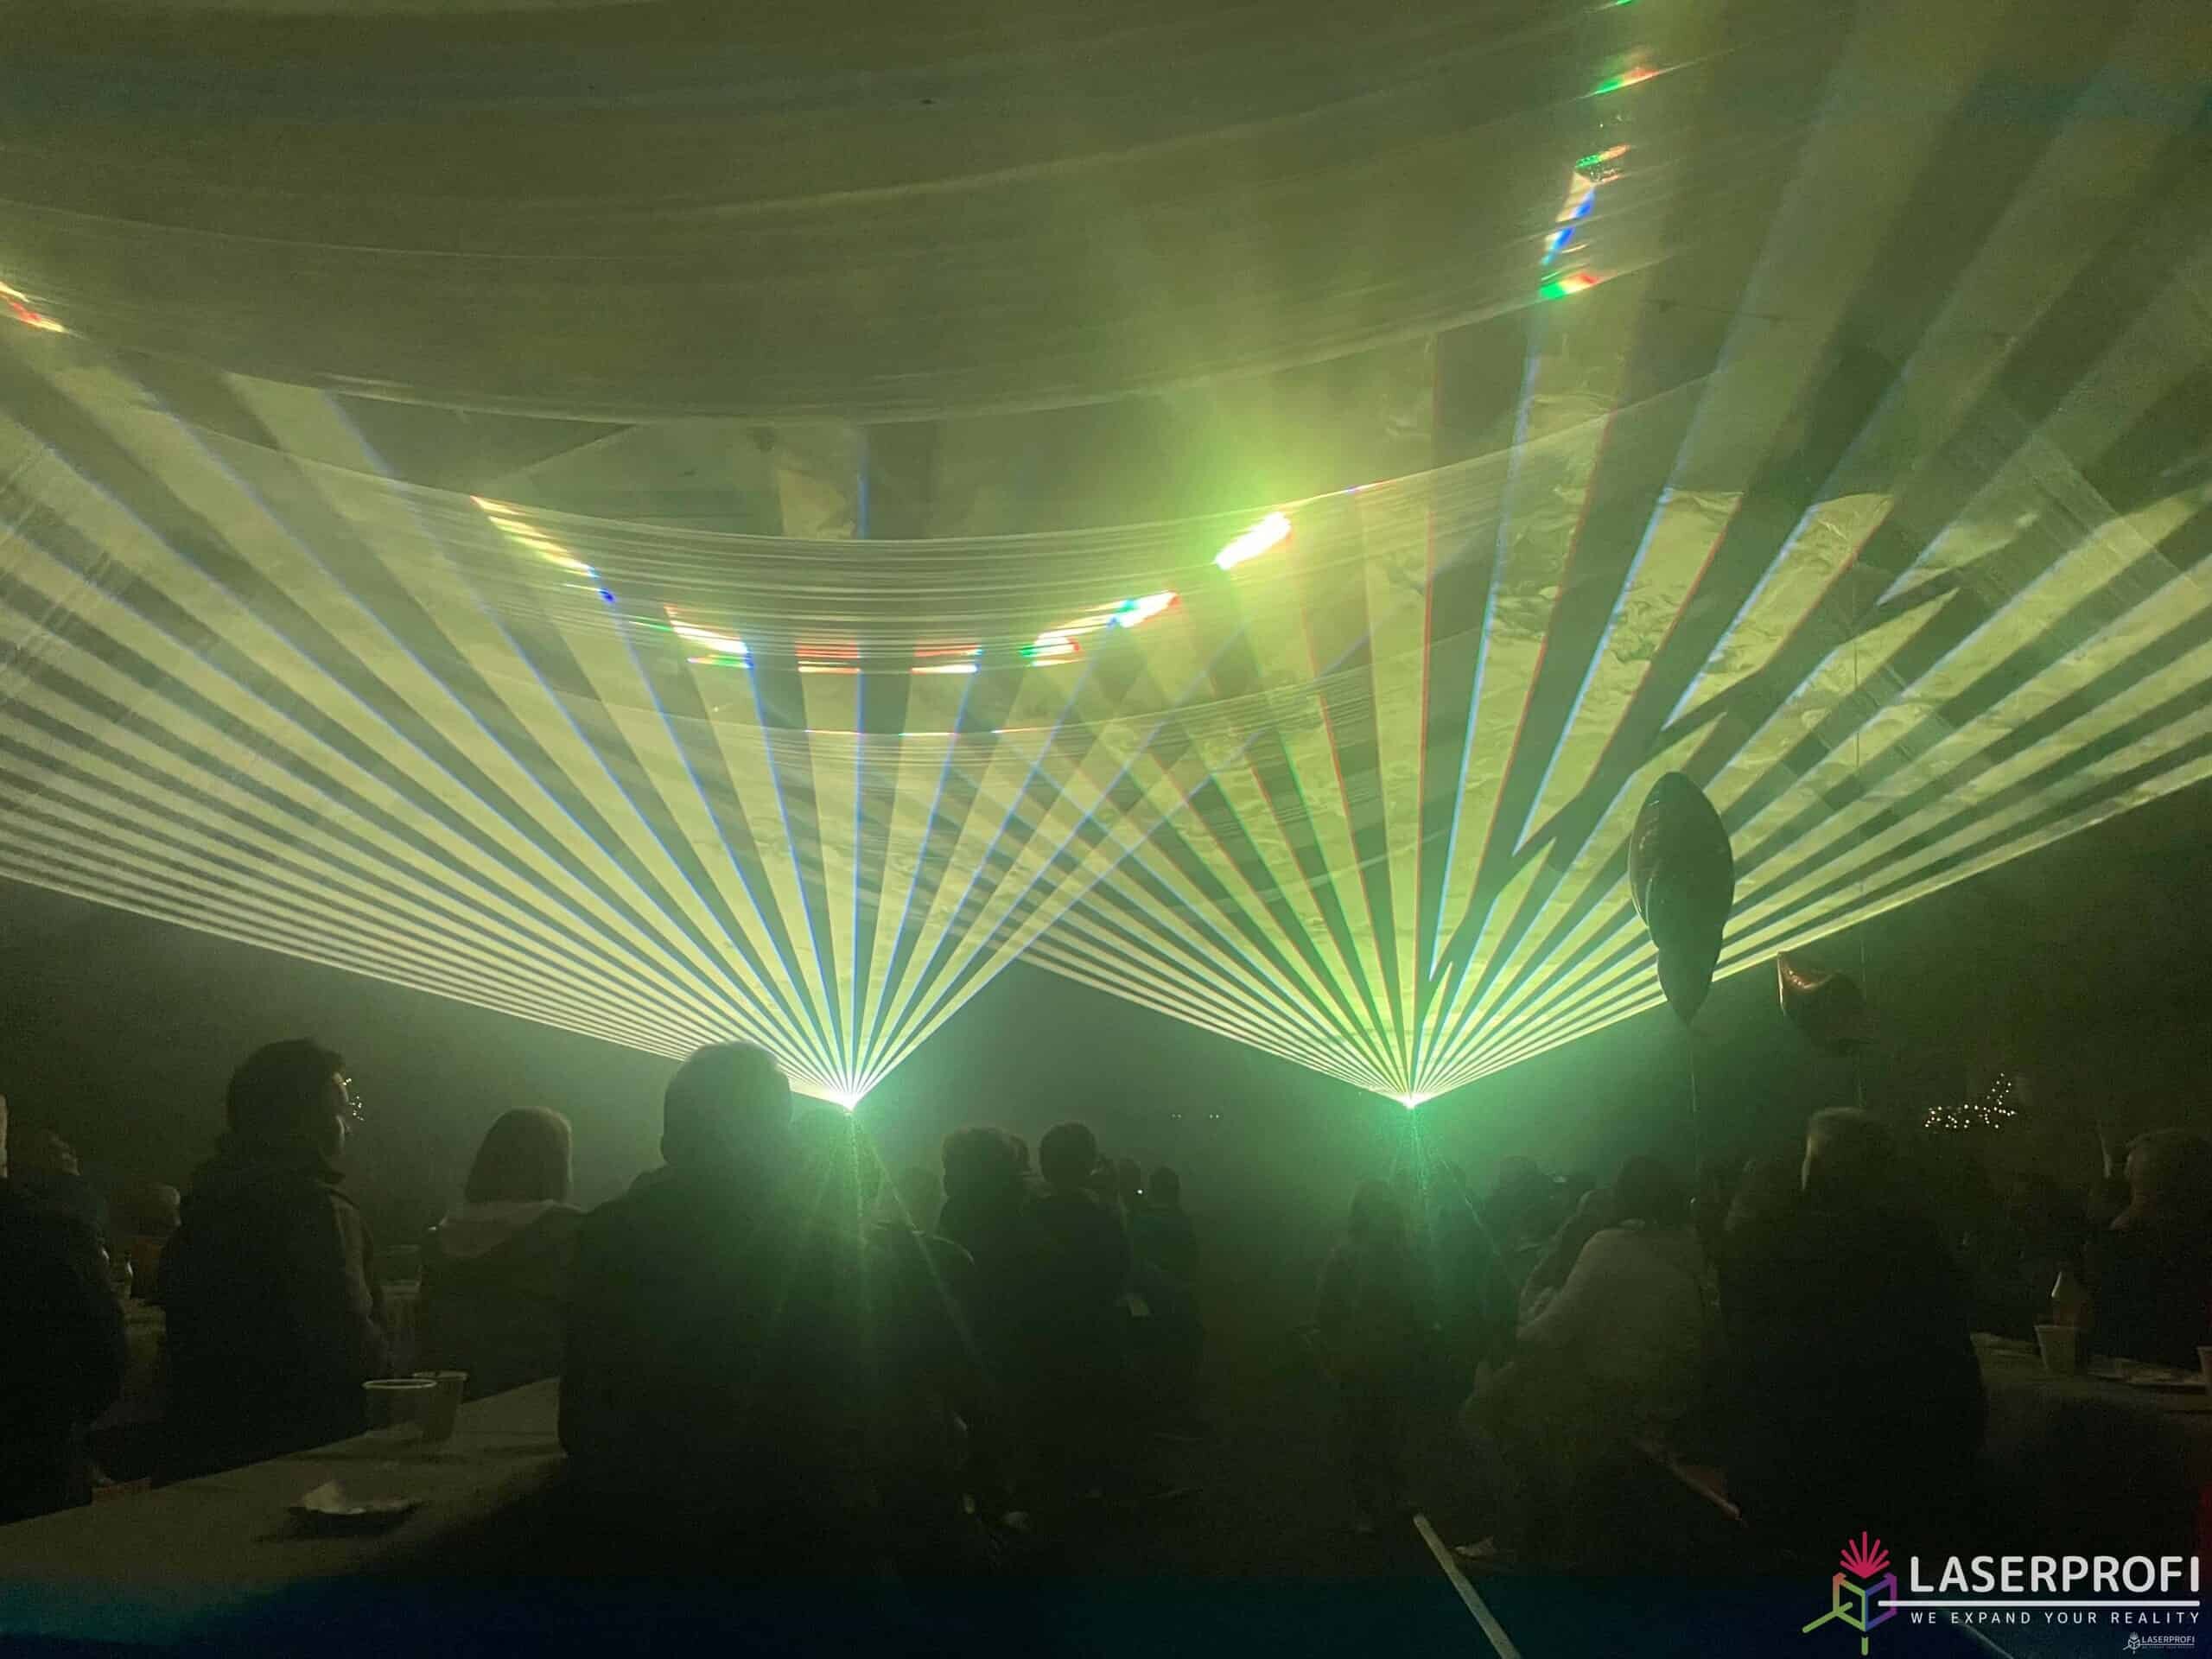 przestrzenny pokaz laserowy na evencie firmowym na evencie firmowym